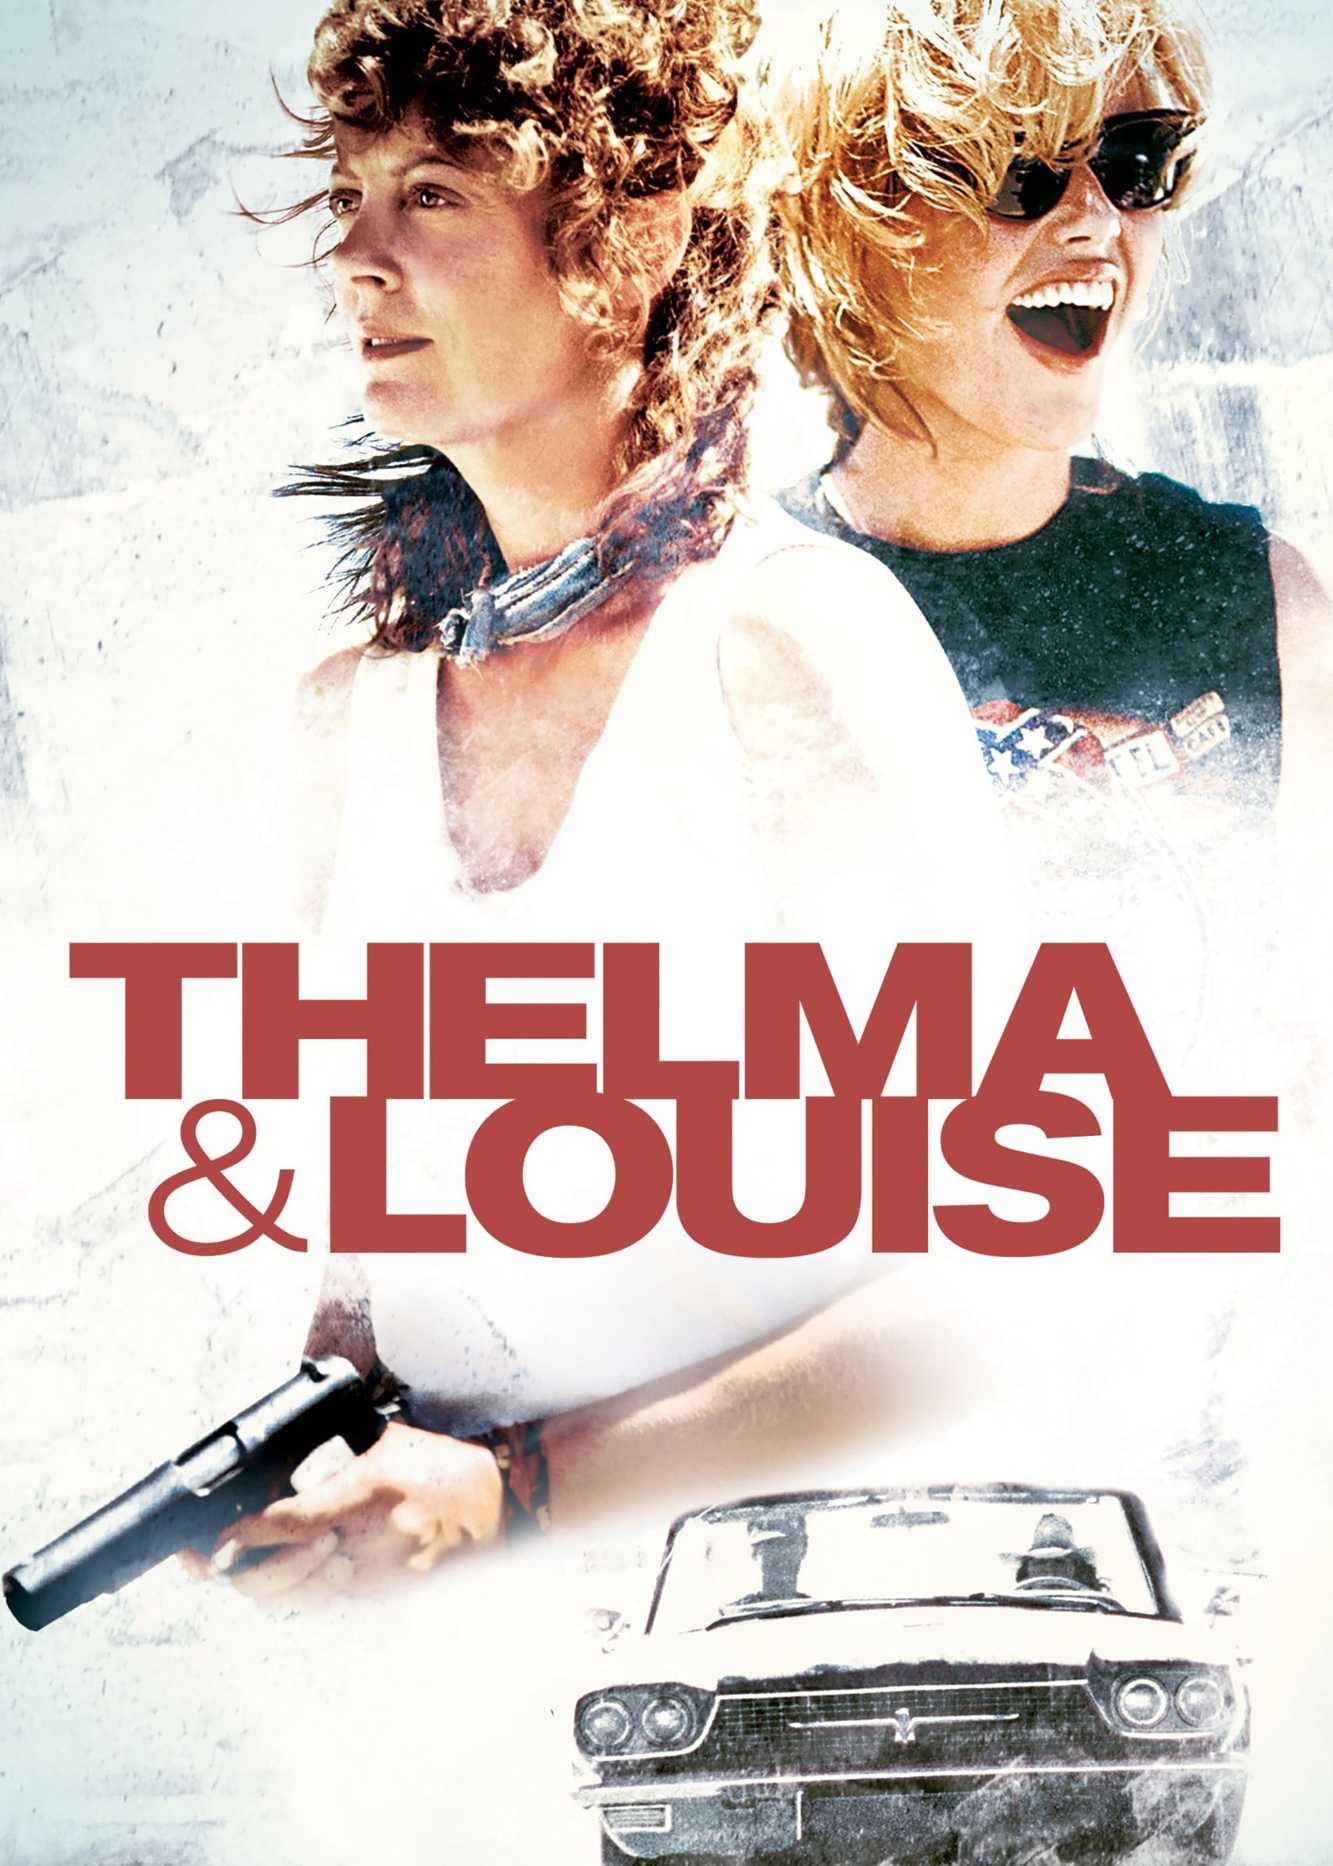 Câu chuyện về thelma và louise - Thelma & louise